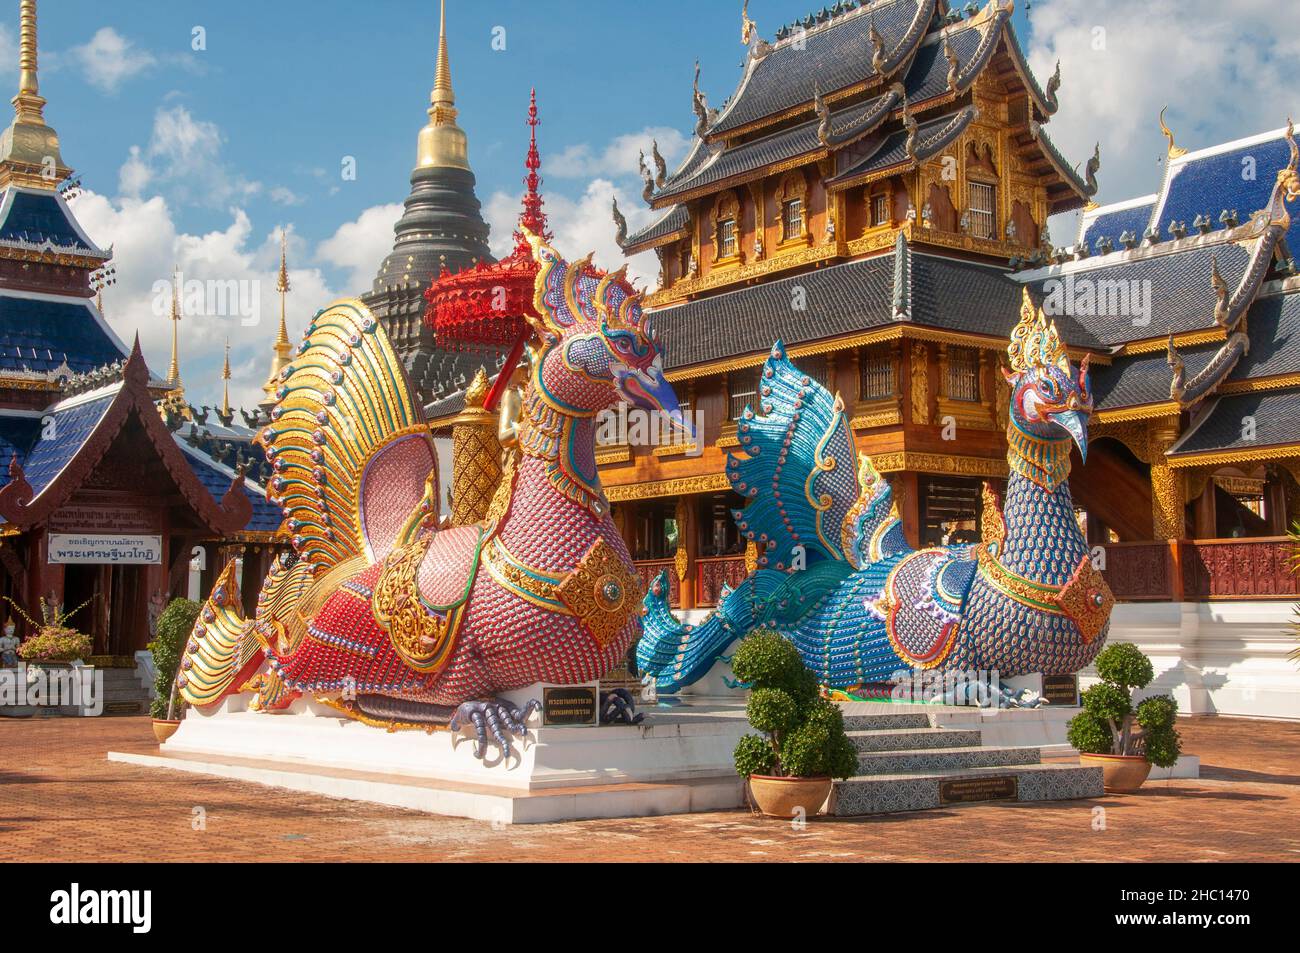 Thailand: Hamsa oder heilige Gänse in Wat Ban Den, Ban Inthakin, Bezirk Mae Taeng, Chiang Mai. Wat Ban Den, auch bekannt als Wat Bandensali Si Mueang Kaen, ist ein großer buddhistischer Tempelkomplex nördlich der Stadt Chiang Mai im Norden Thailands. Stockfoto